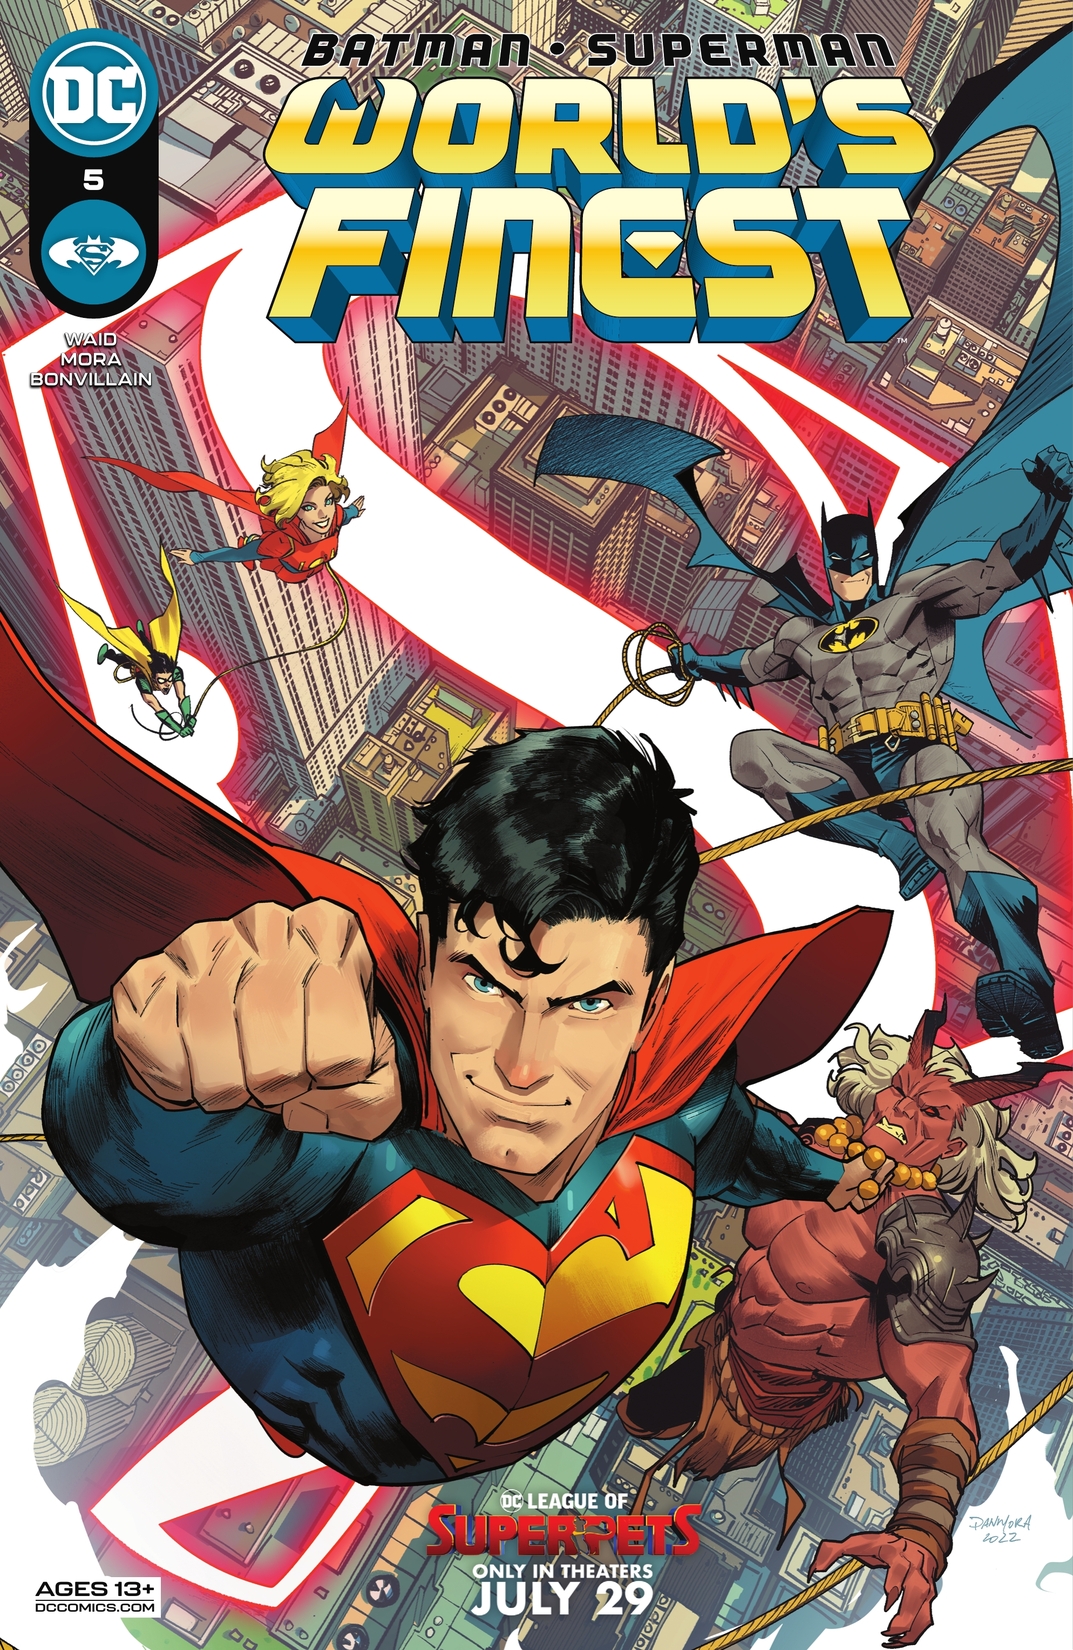 Batman/Superman: World's Finest #5 preview images